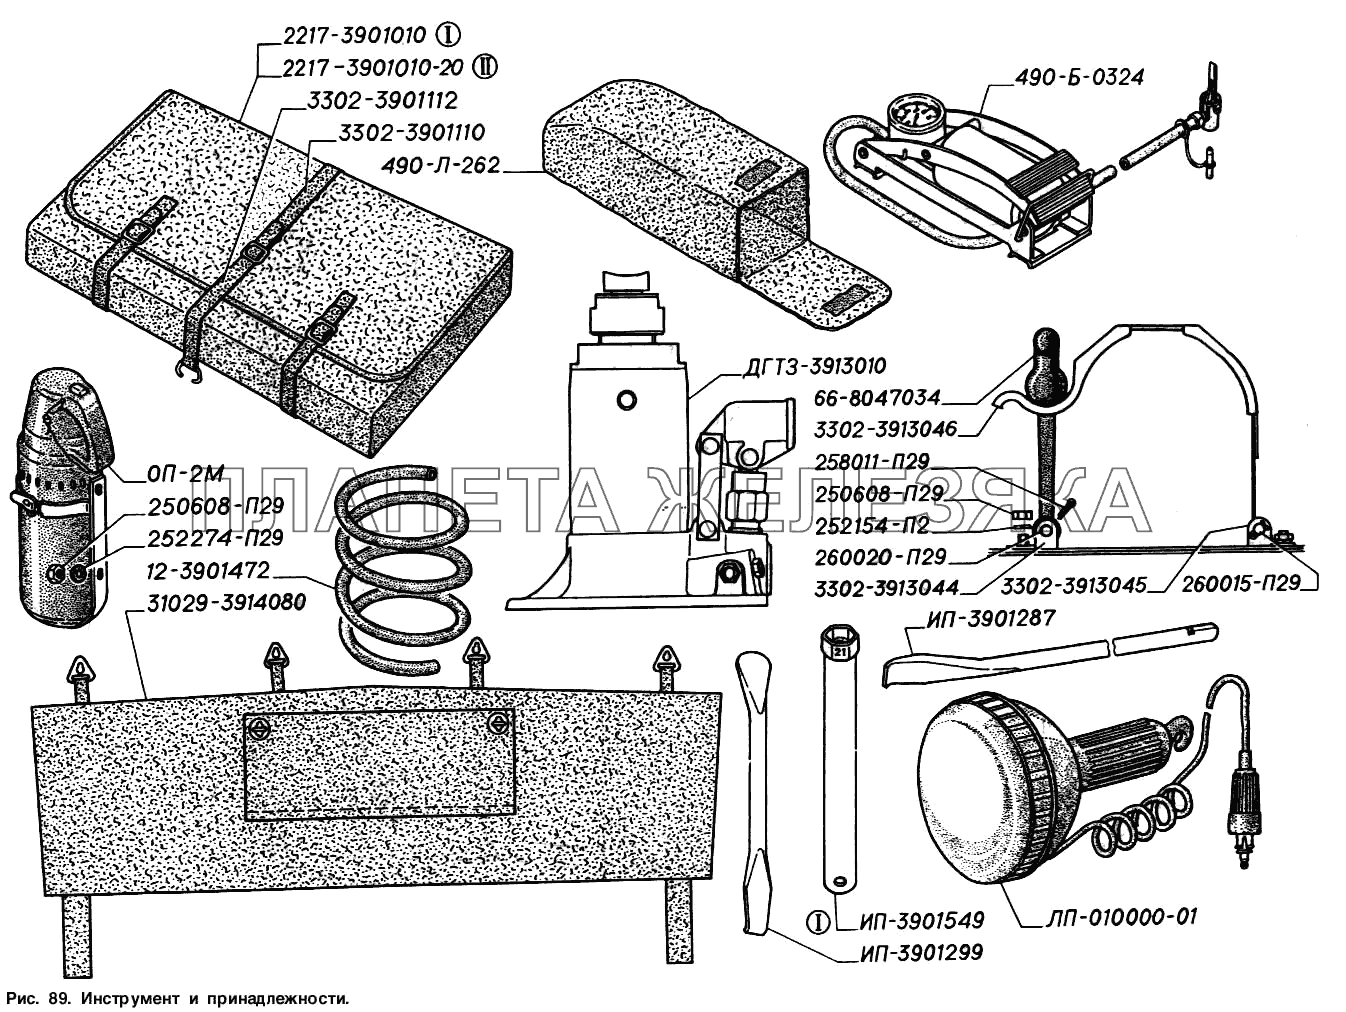 Инструмент и принадлежности ГАЗ-2217 (Соболь)